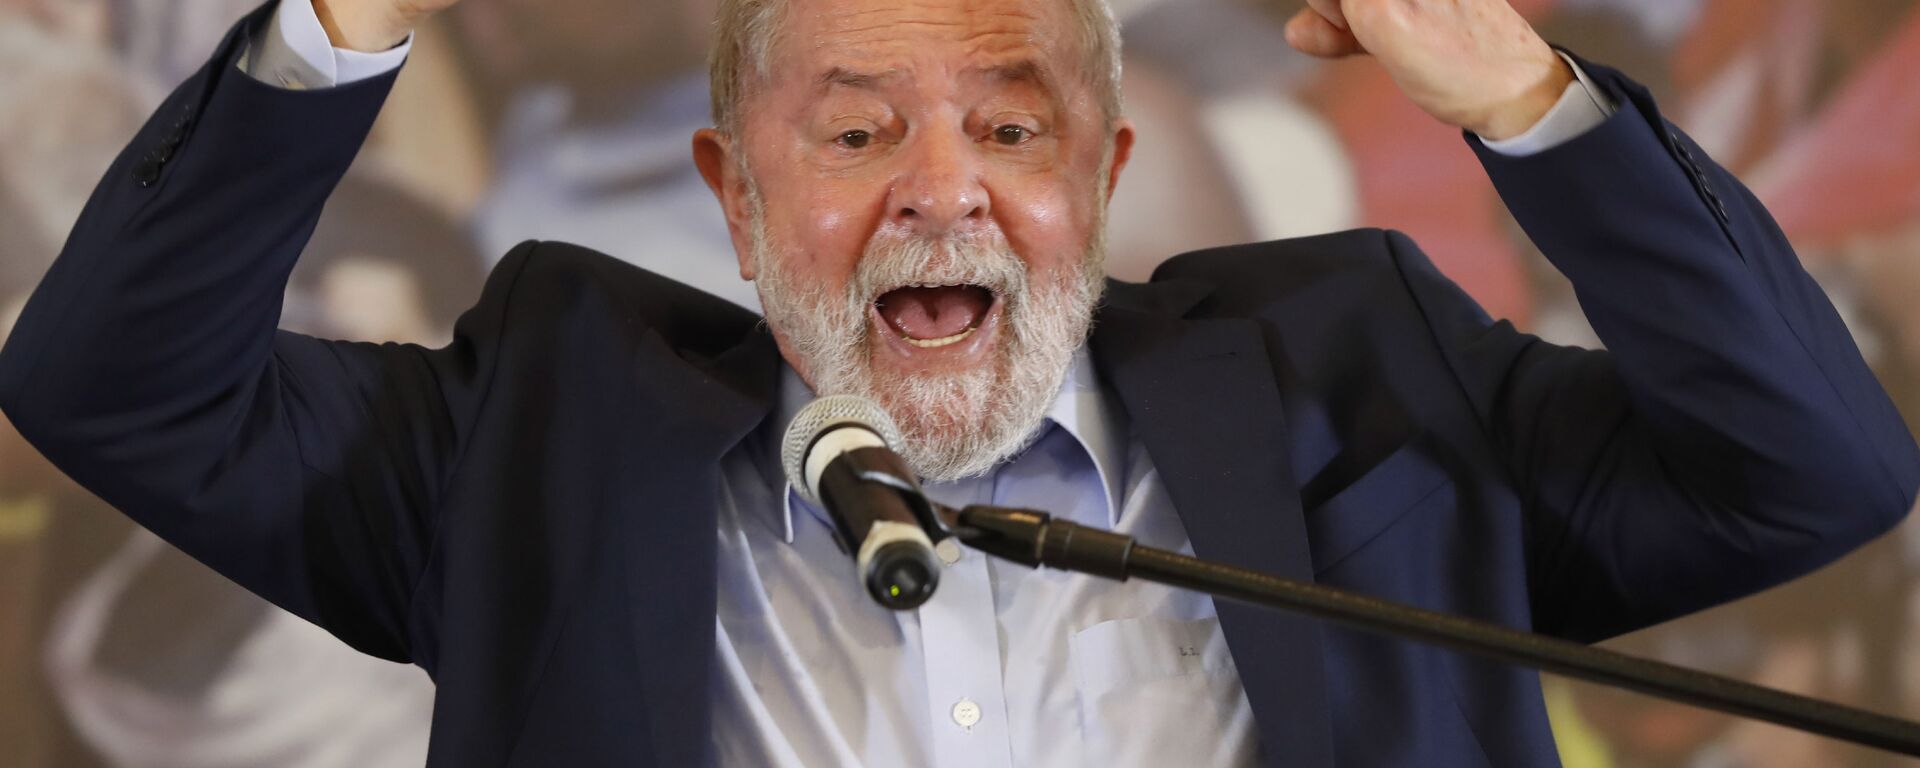 O ex-presidente Luiz Inácio Lula da Silva discursa no Sindicato dos Metalúrgicos, em São Bernardo do Campo. - Sputnik Brasil, 1920, 27.04.2022